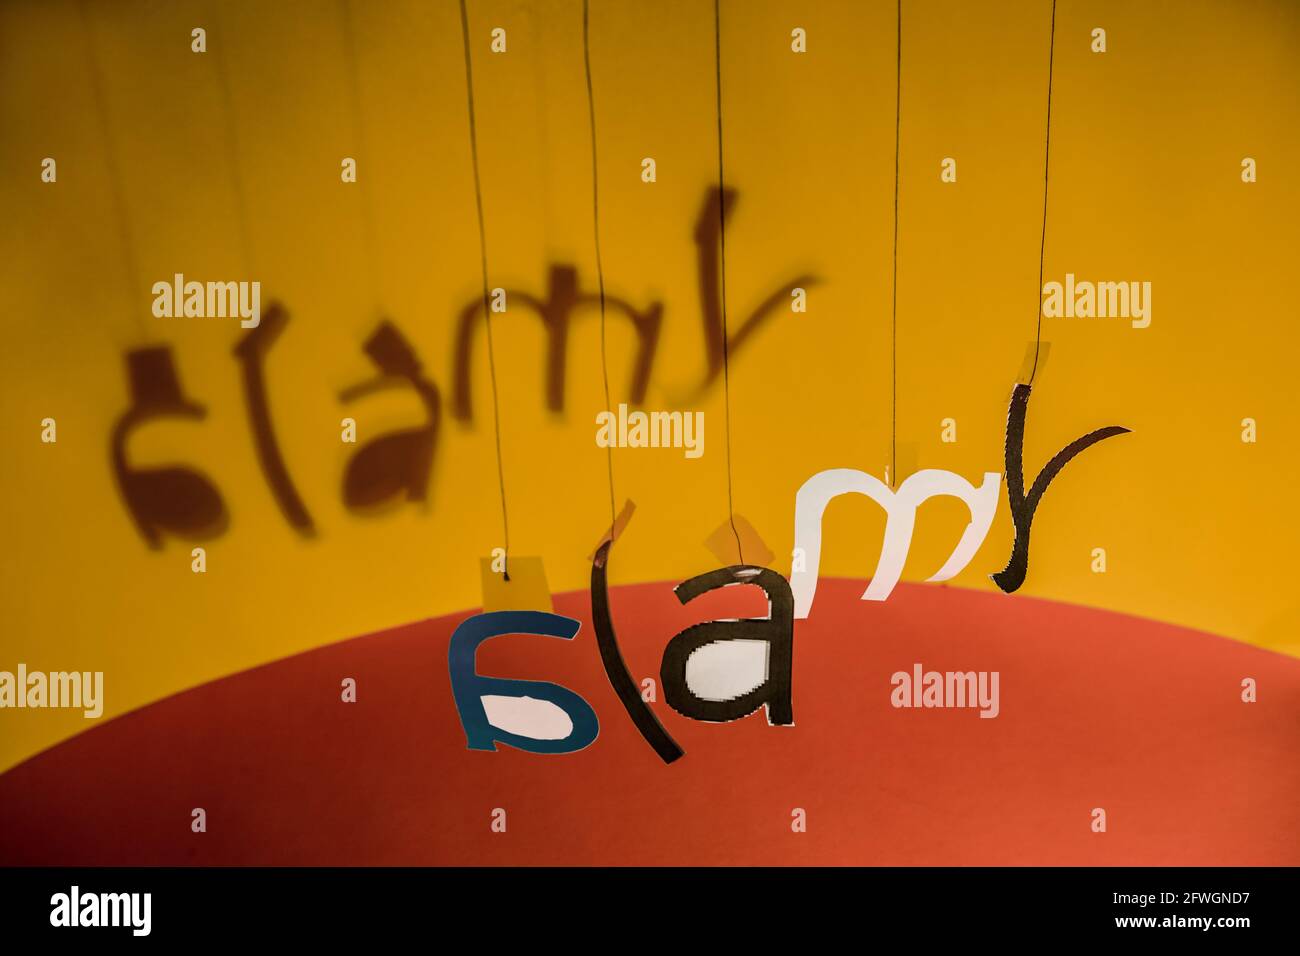 An Fäden hängende Buchstaben bilden in einer gewissen Unordnung das Alamy-Logo. Stockfoto